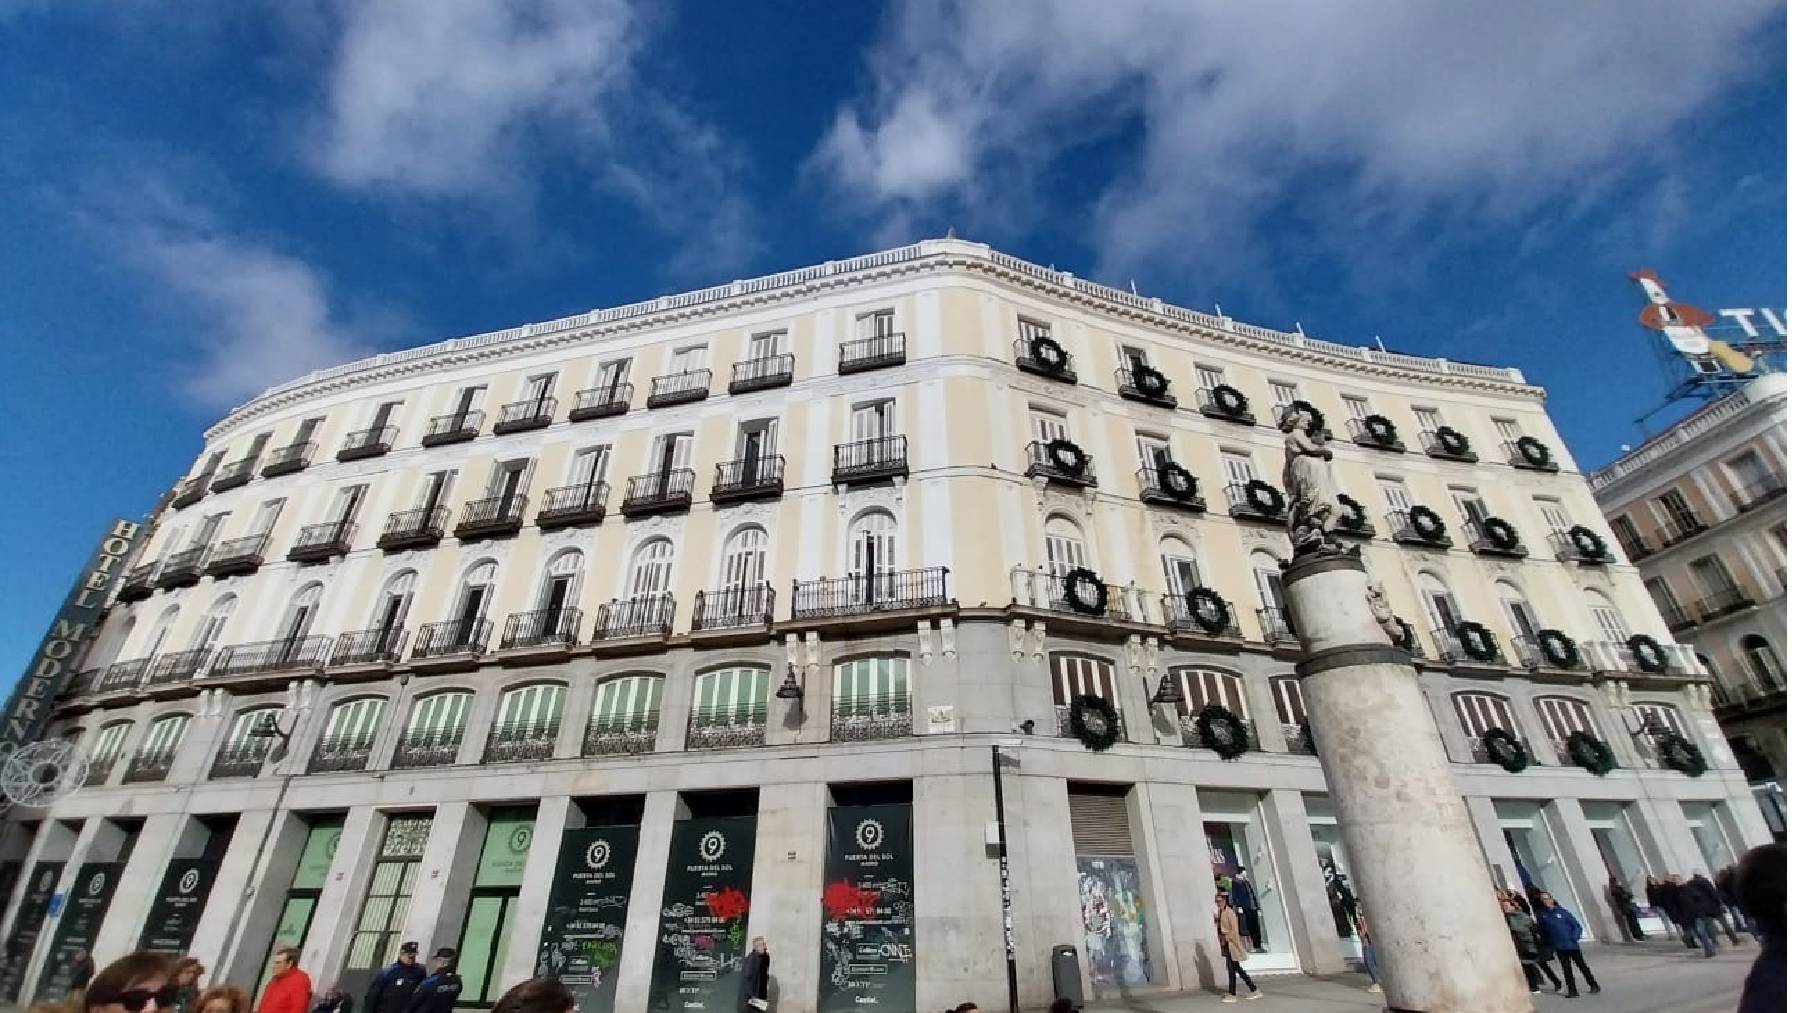 Edificio Puerta del Sol, 9, adquirido por El Corte Inglés.